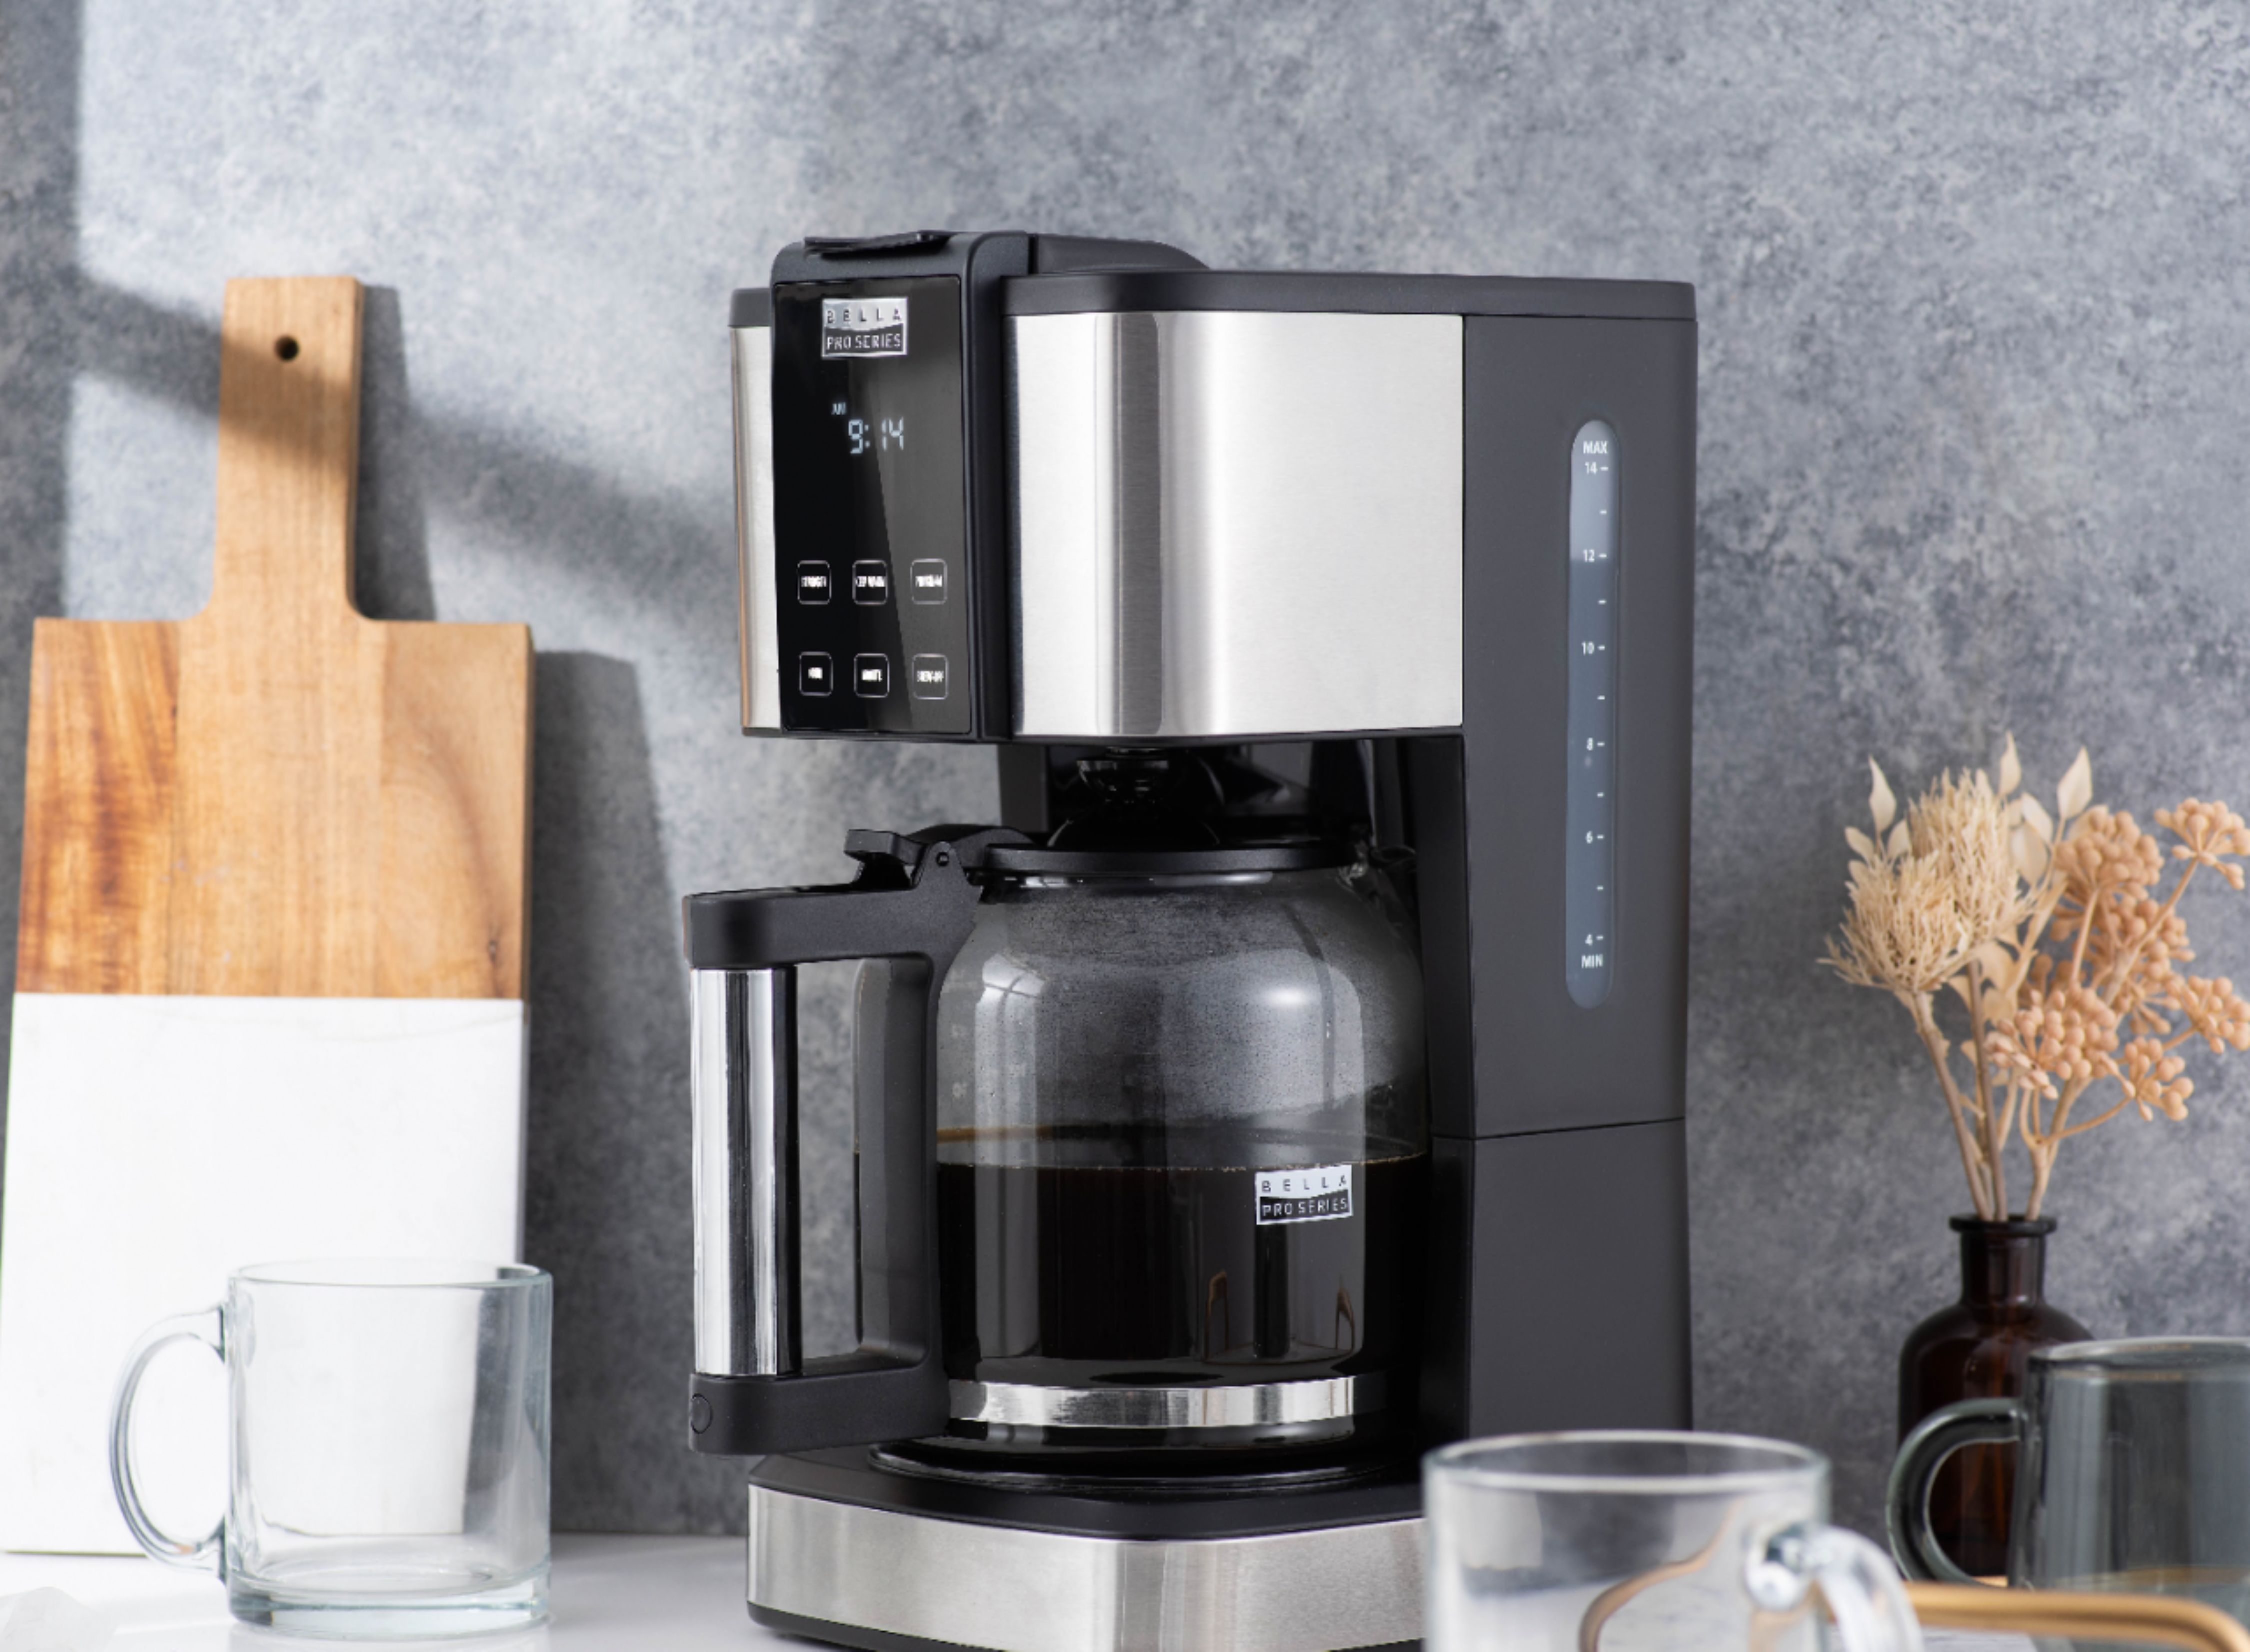 Best Buy: Bella Pro Series 5-Cup Coffee Maker Stainless Steel 90071